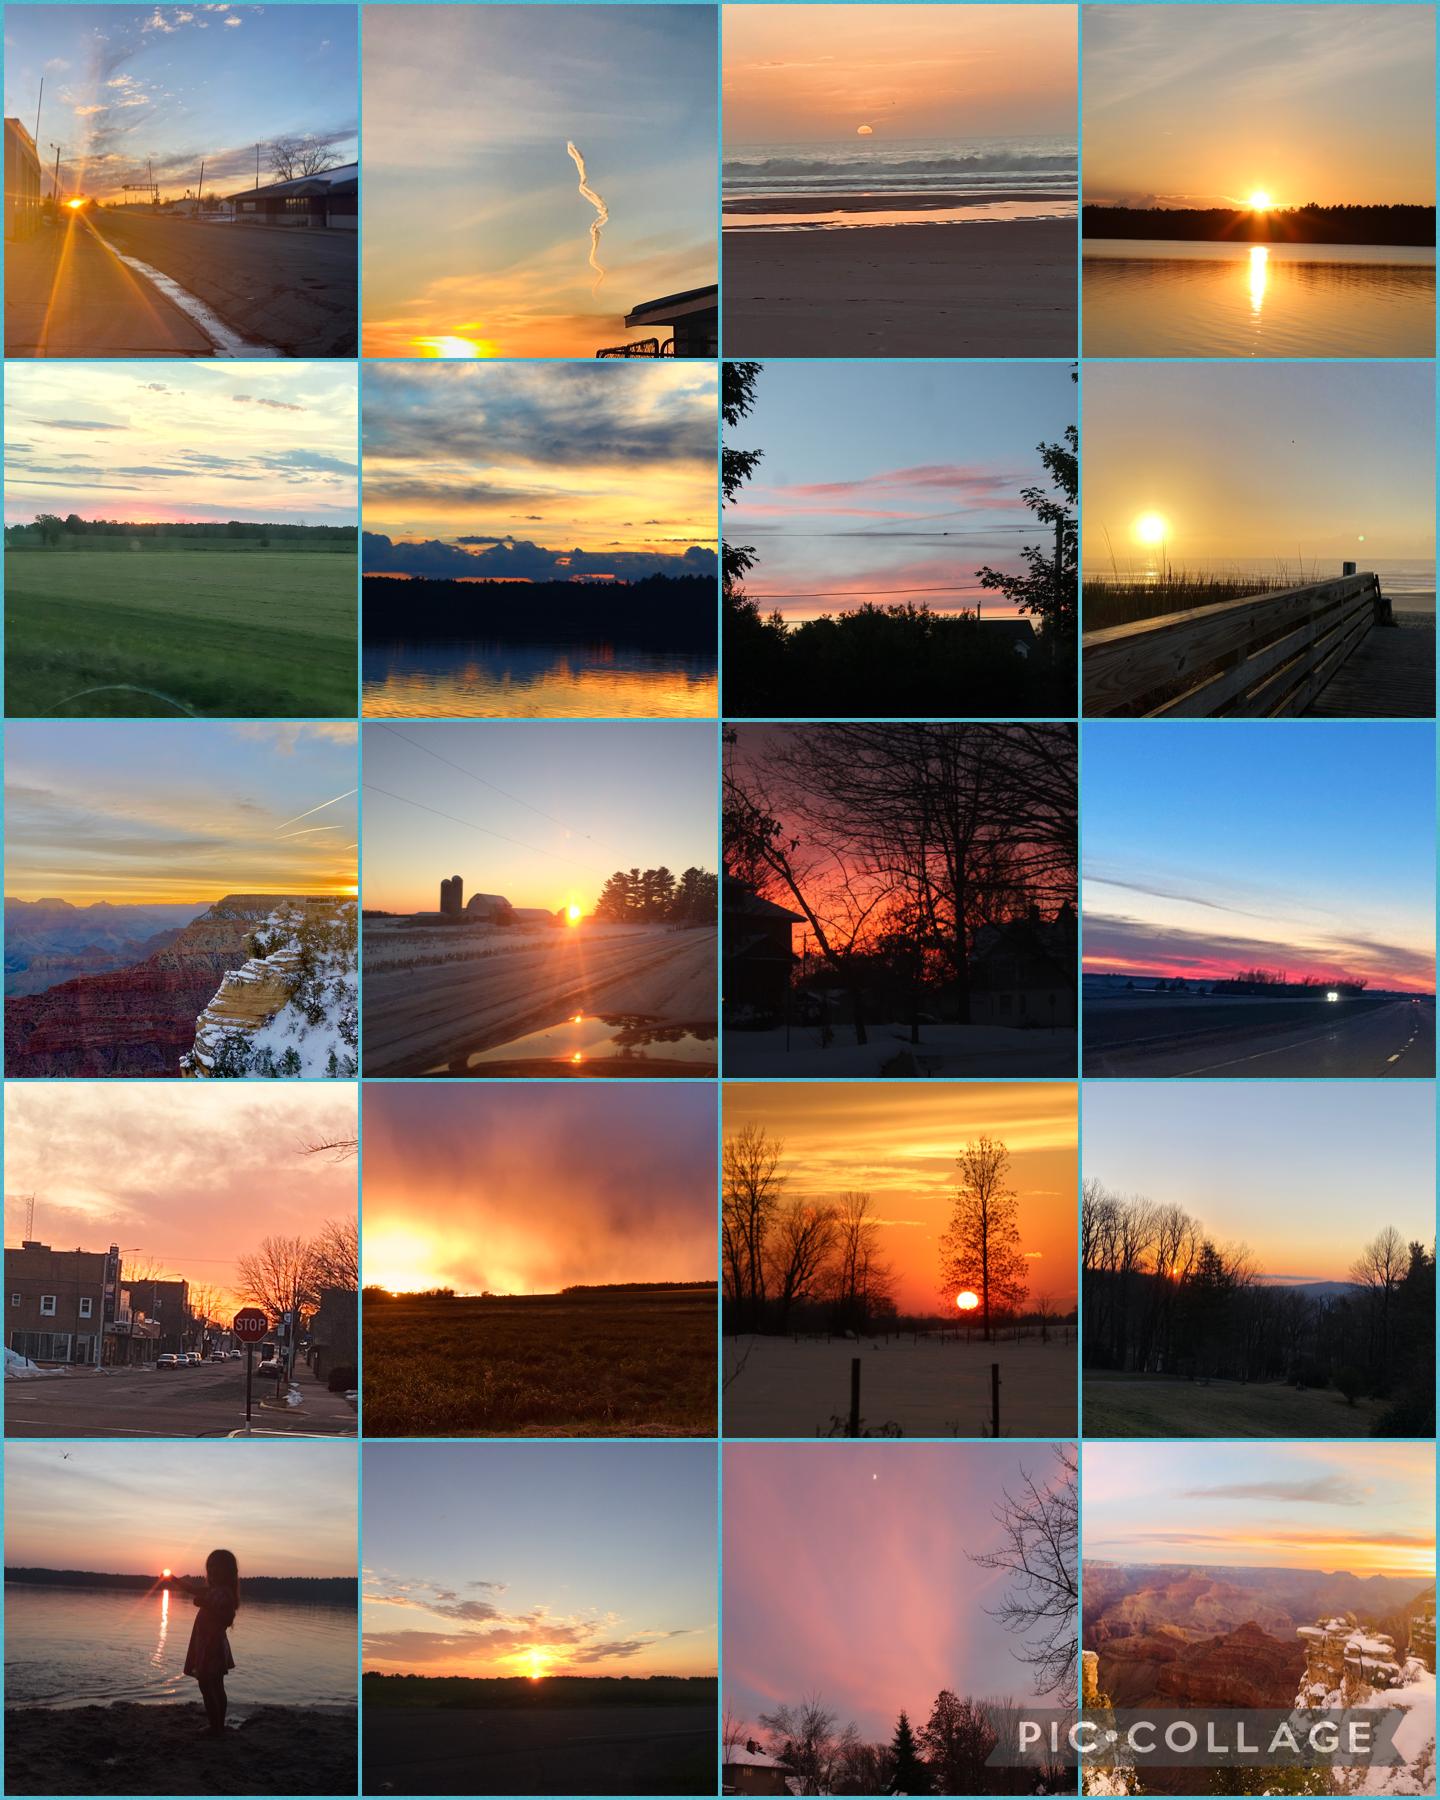 Sunrise, sunsets, and everything beautiful ✨